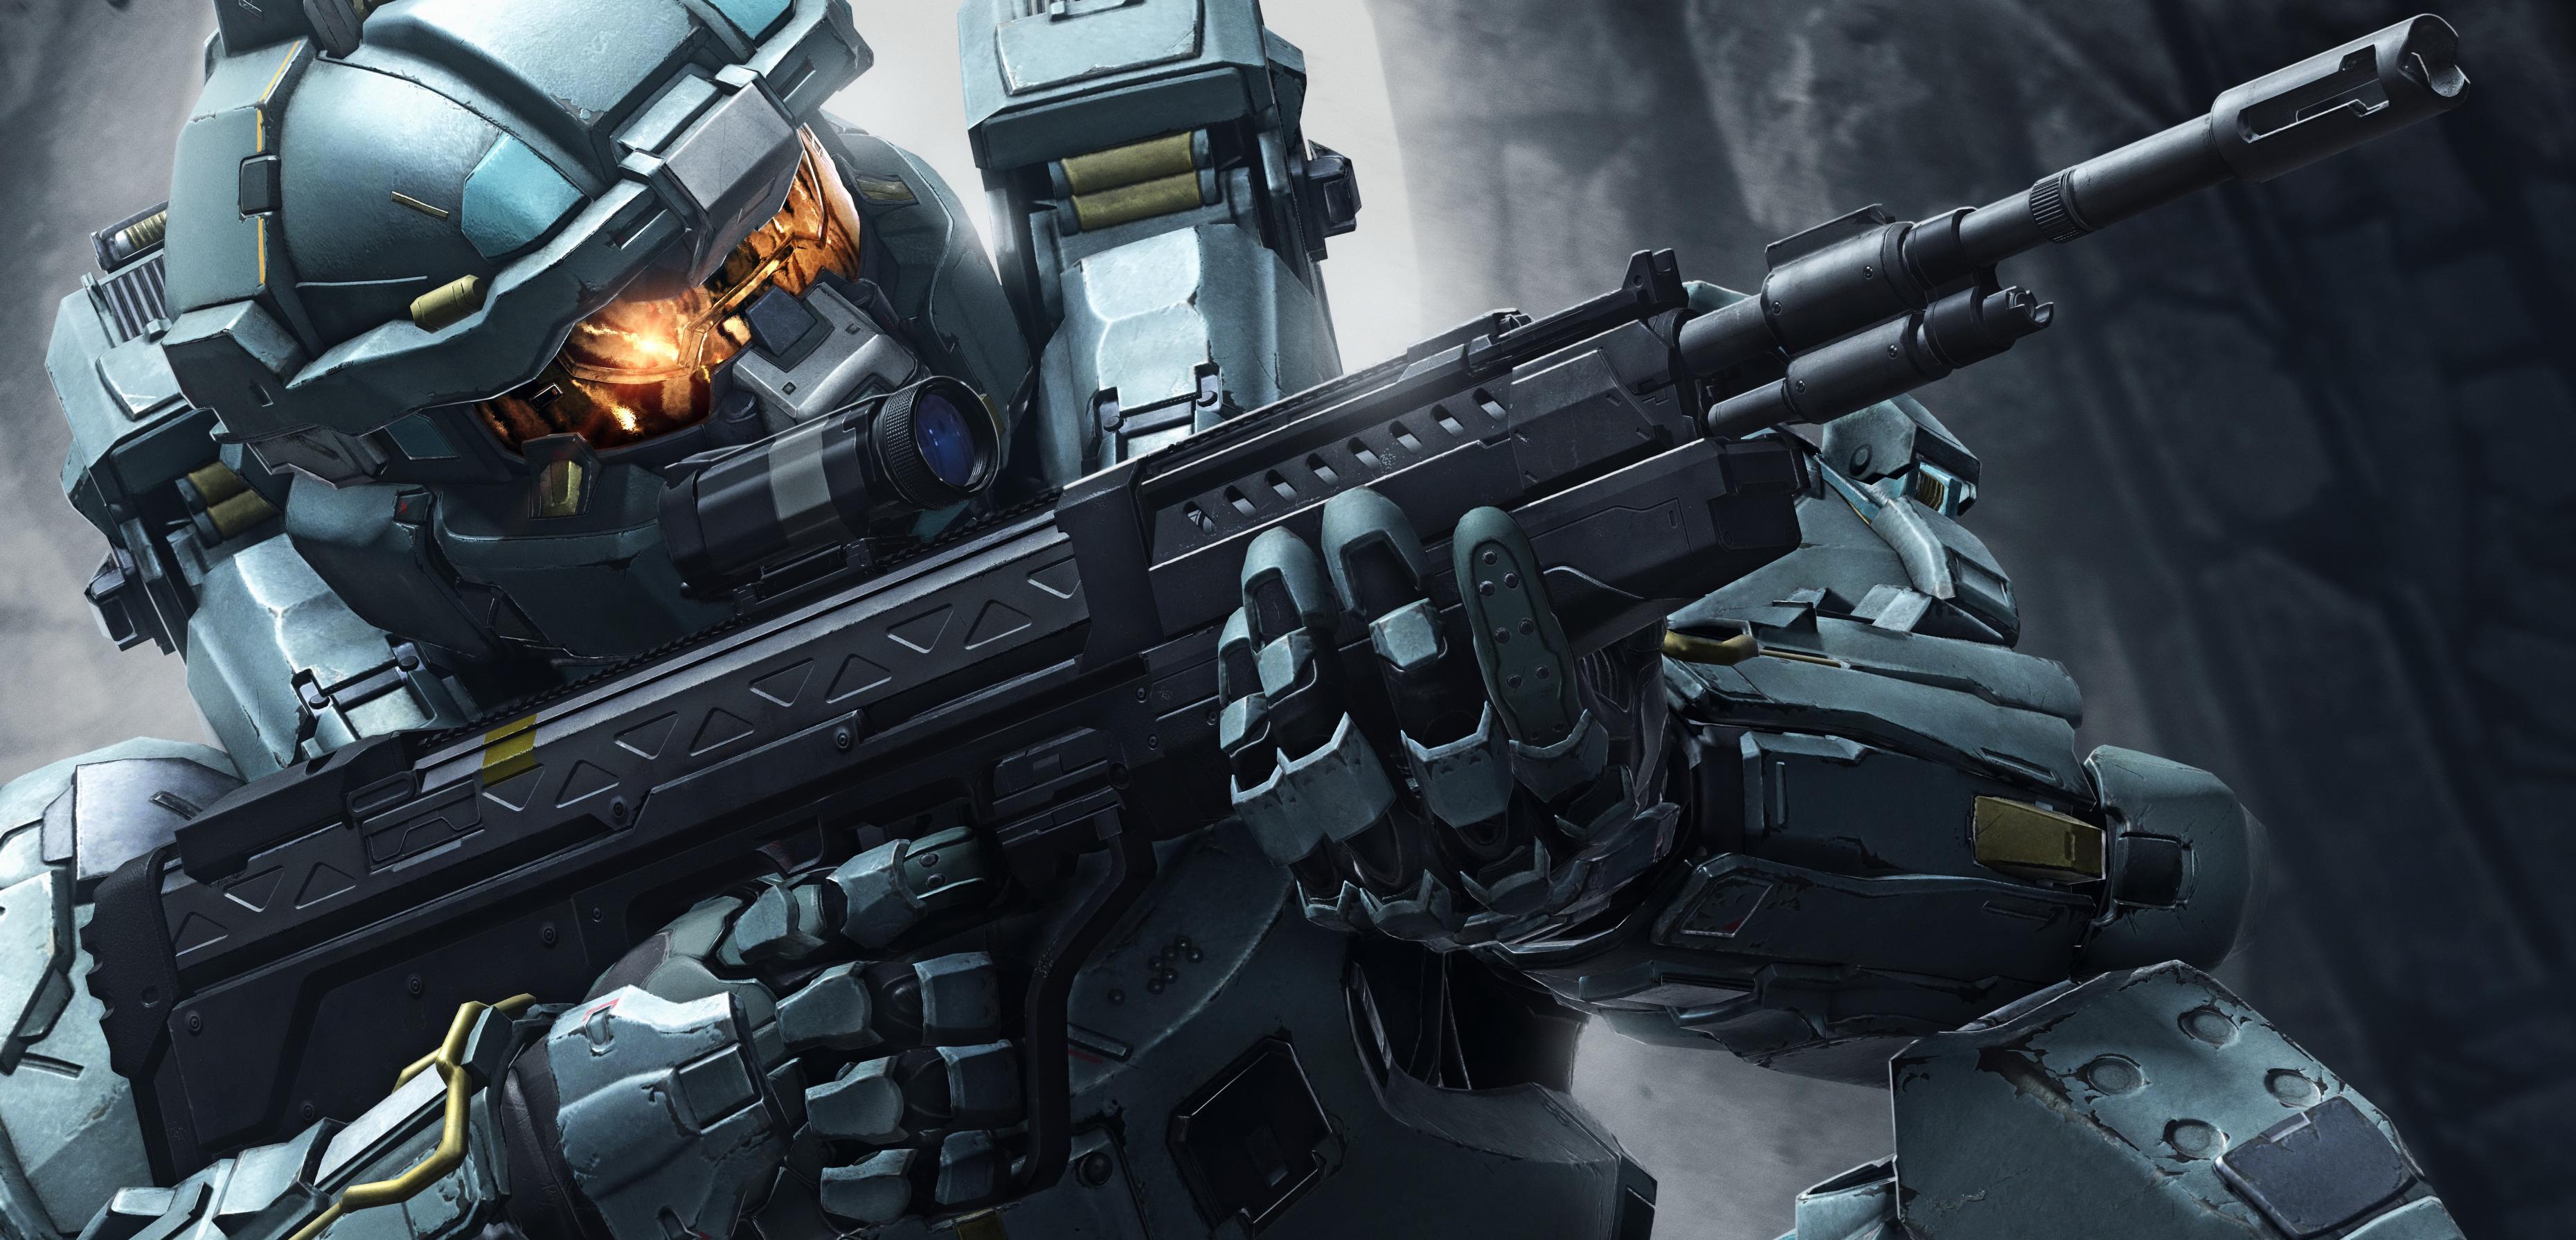 Halo 5 poświęca jakość obrazu dla animacji 60 fps - analiza graficzna nowej strzelaniny